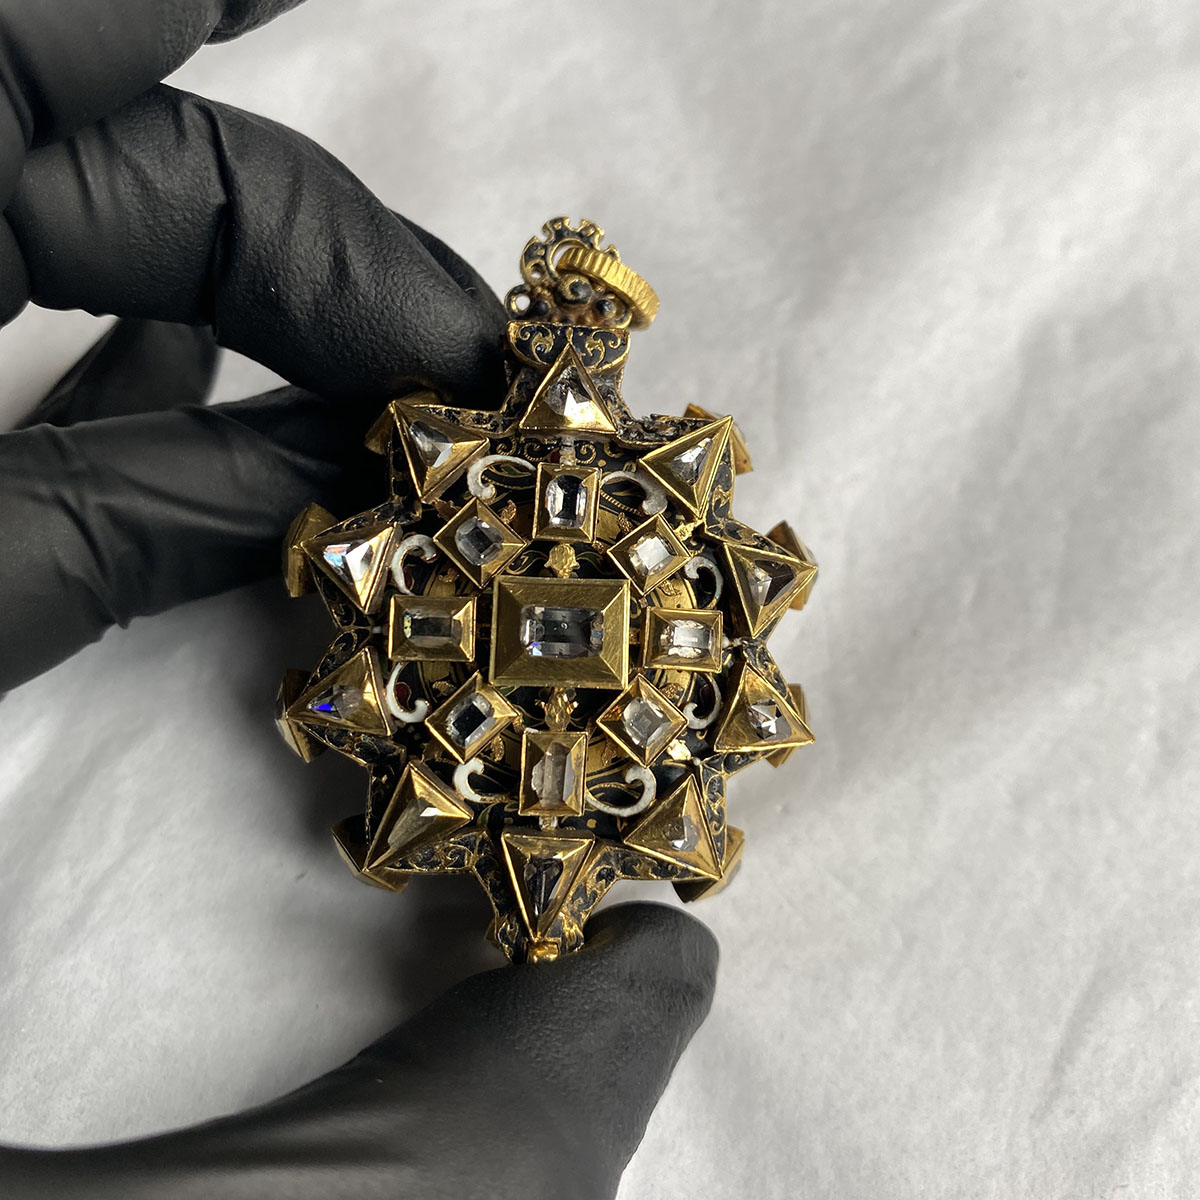 Montre ornée de diamants réalisée par Martin Duboule au début du XVIIe siècle